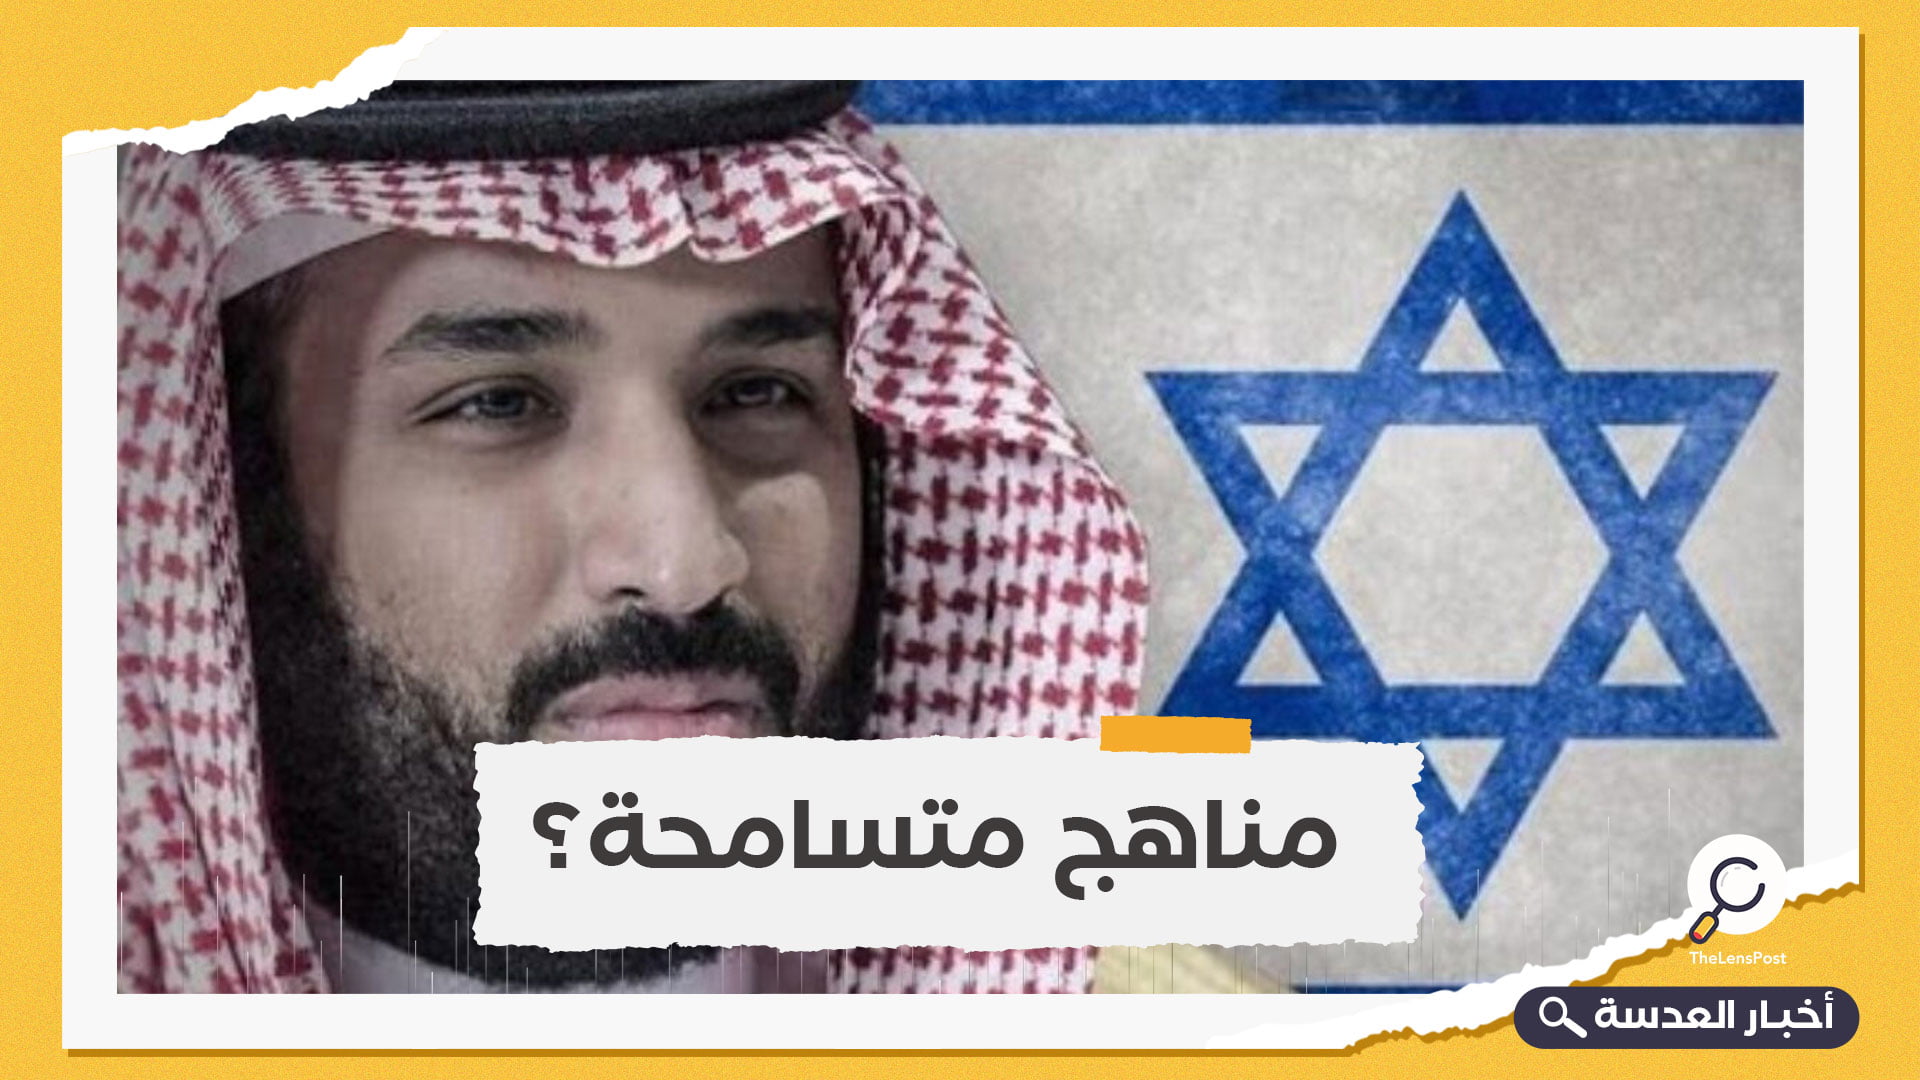 بن سلمان ينقح المناهج السعودية من أي انتقاد لليهود أو المسيحية أو الشذوذ الجنسي